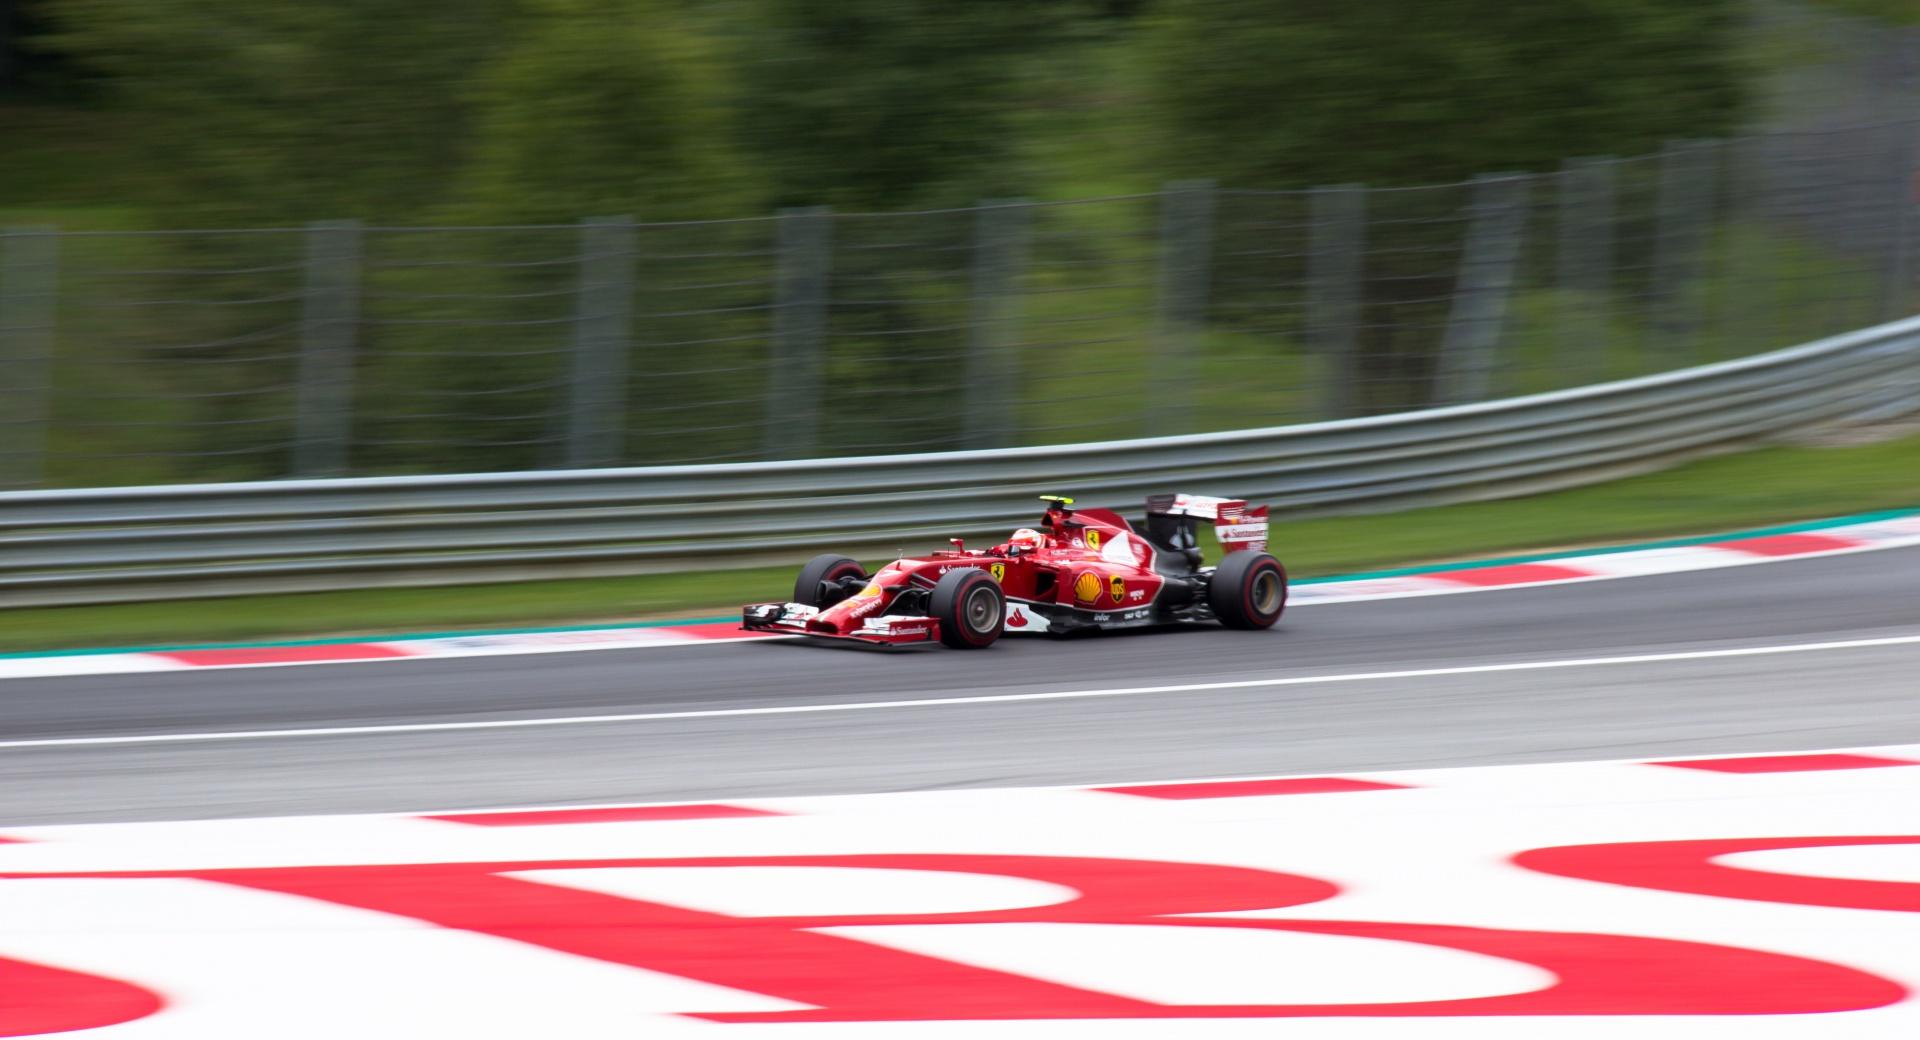 Grand Prix Austria - Red Bull - F1 - 2014 at 1024 x 1024 iPad size wallpapers HD quality